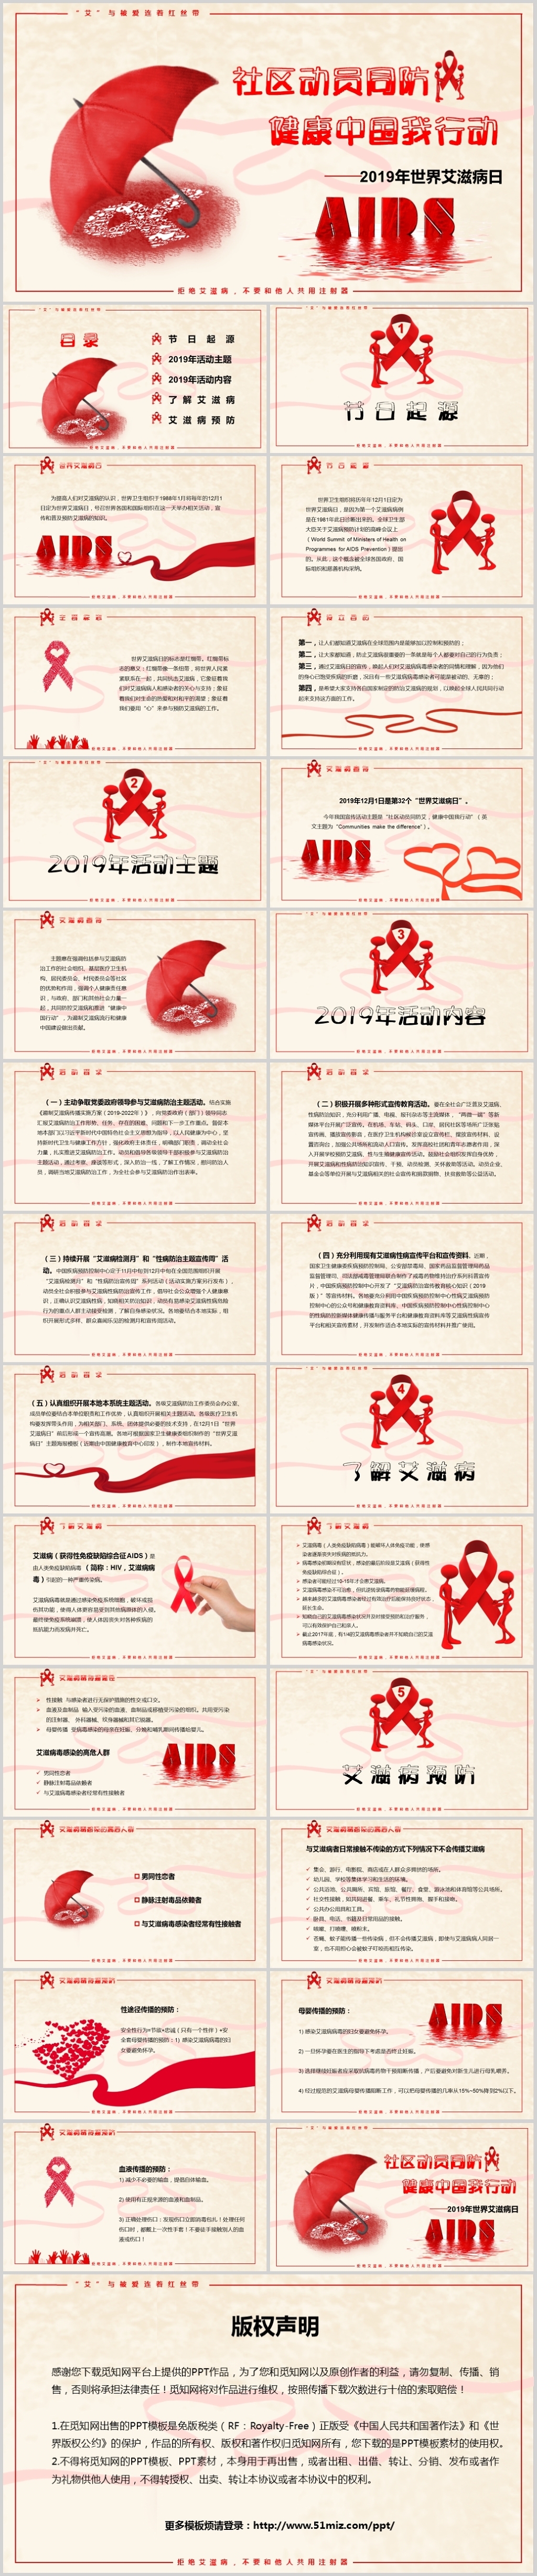 红色简约风社区动员同防艾滋健康中国我行动宣传PPT